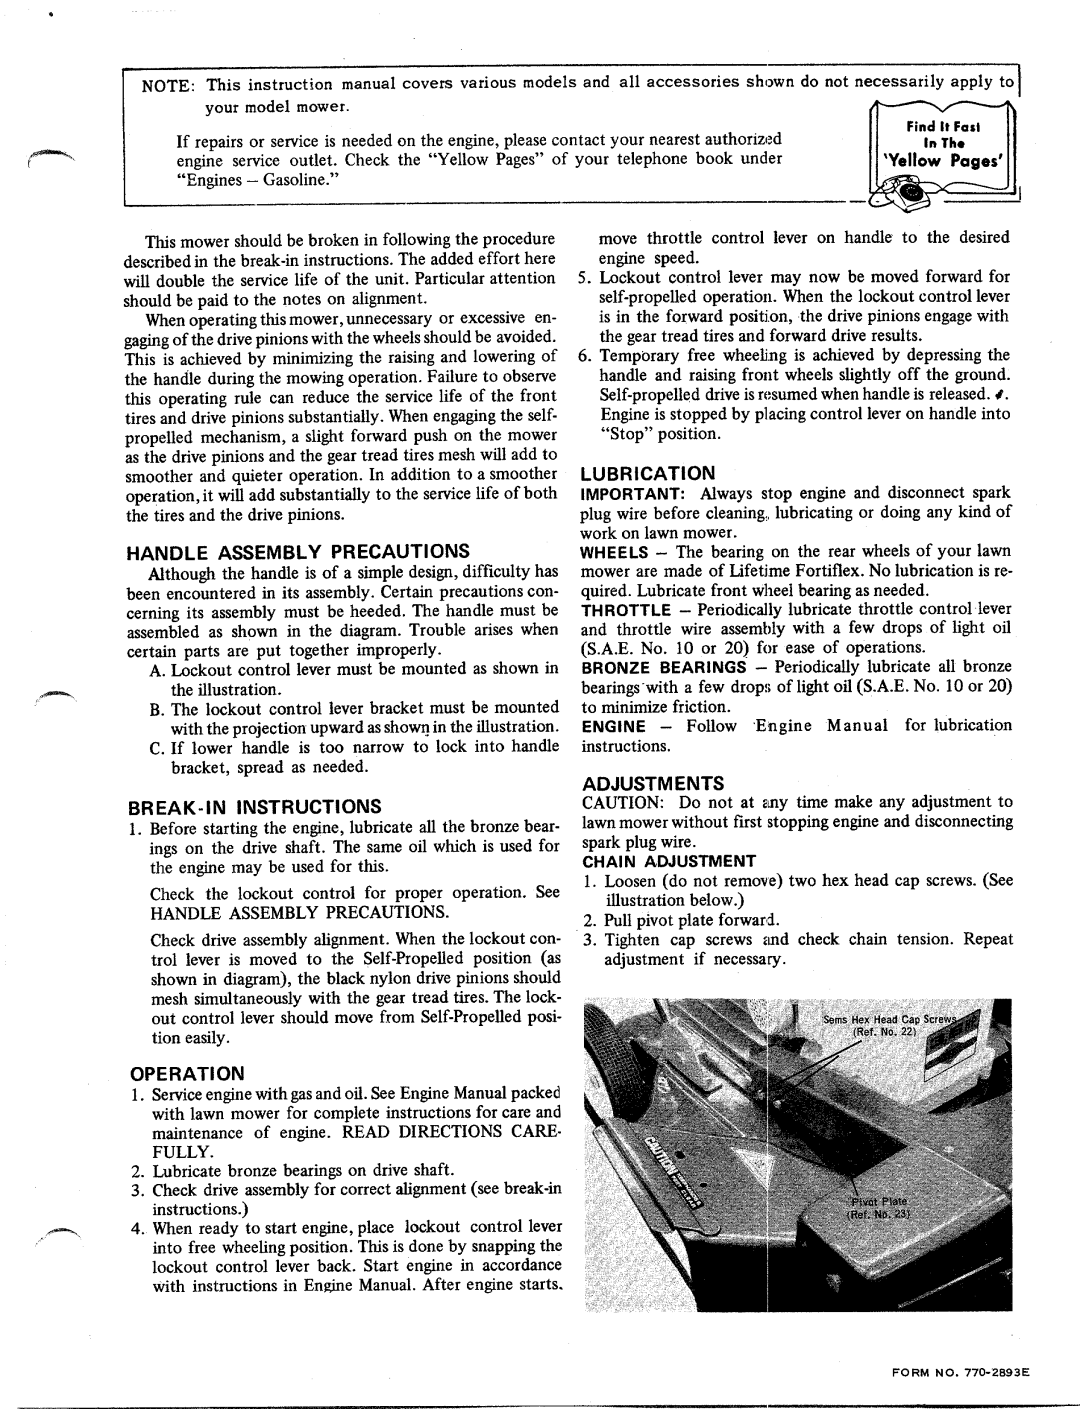 MTD 121-940 manual 